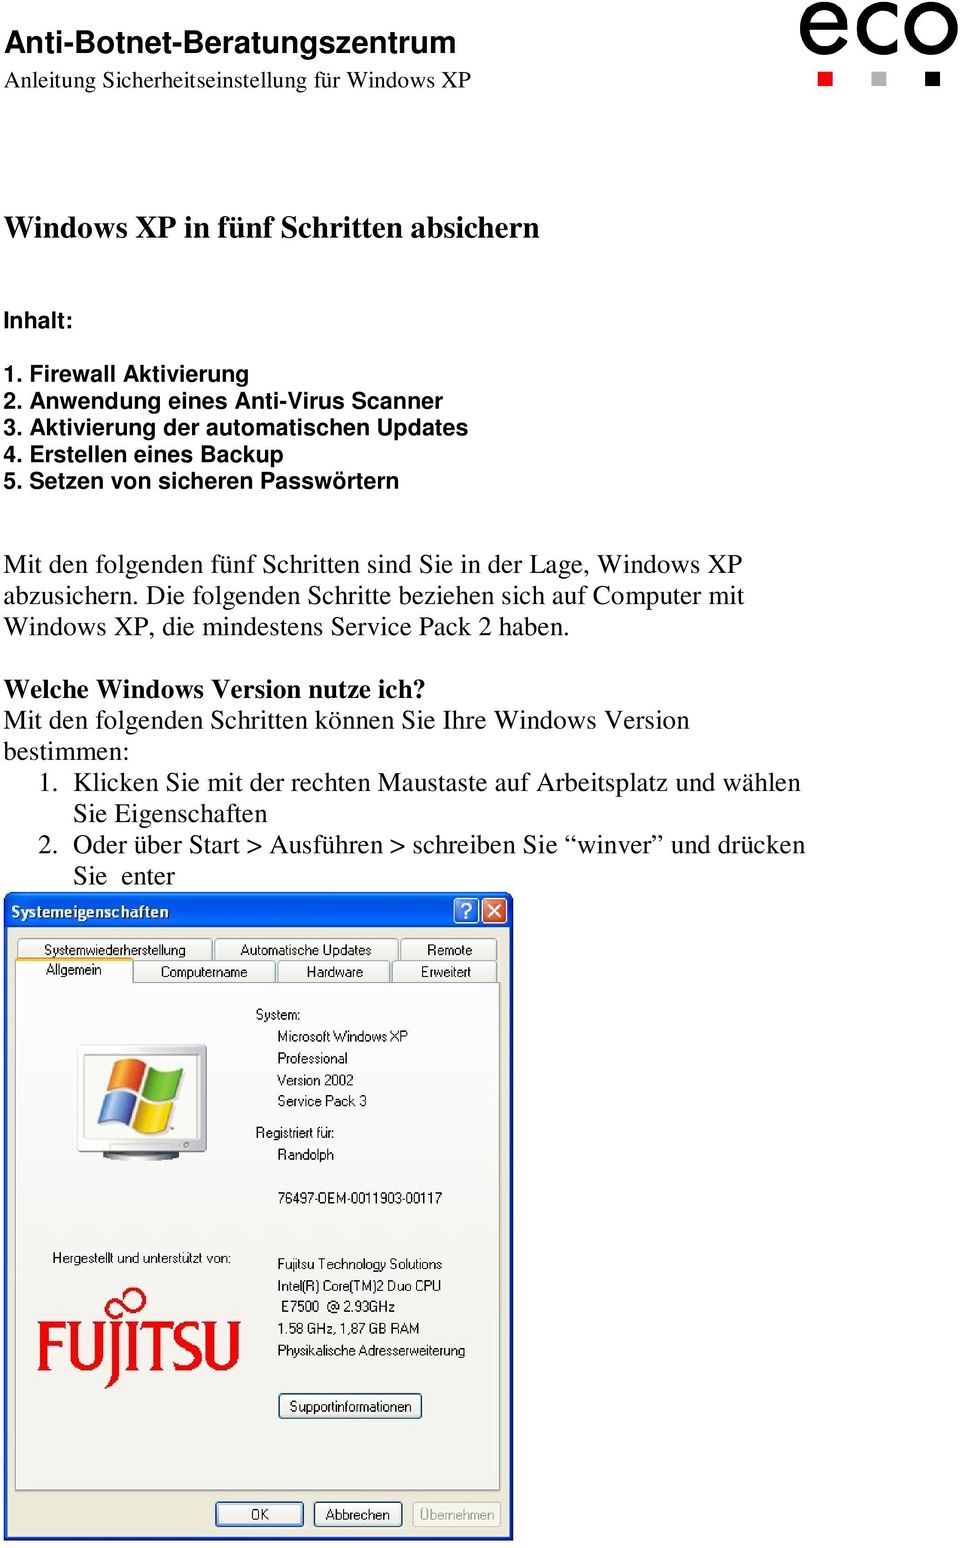 Die folgenden Schritte beziehen sich auf Computer mit Windows XP, die mindestens Service Pack 2 haben. Welche Windows Version nutze ich?